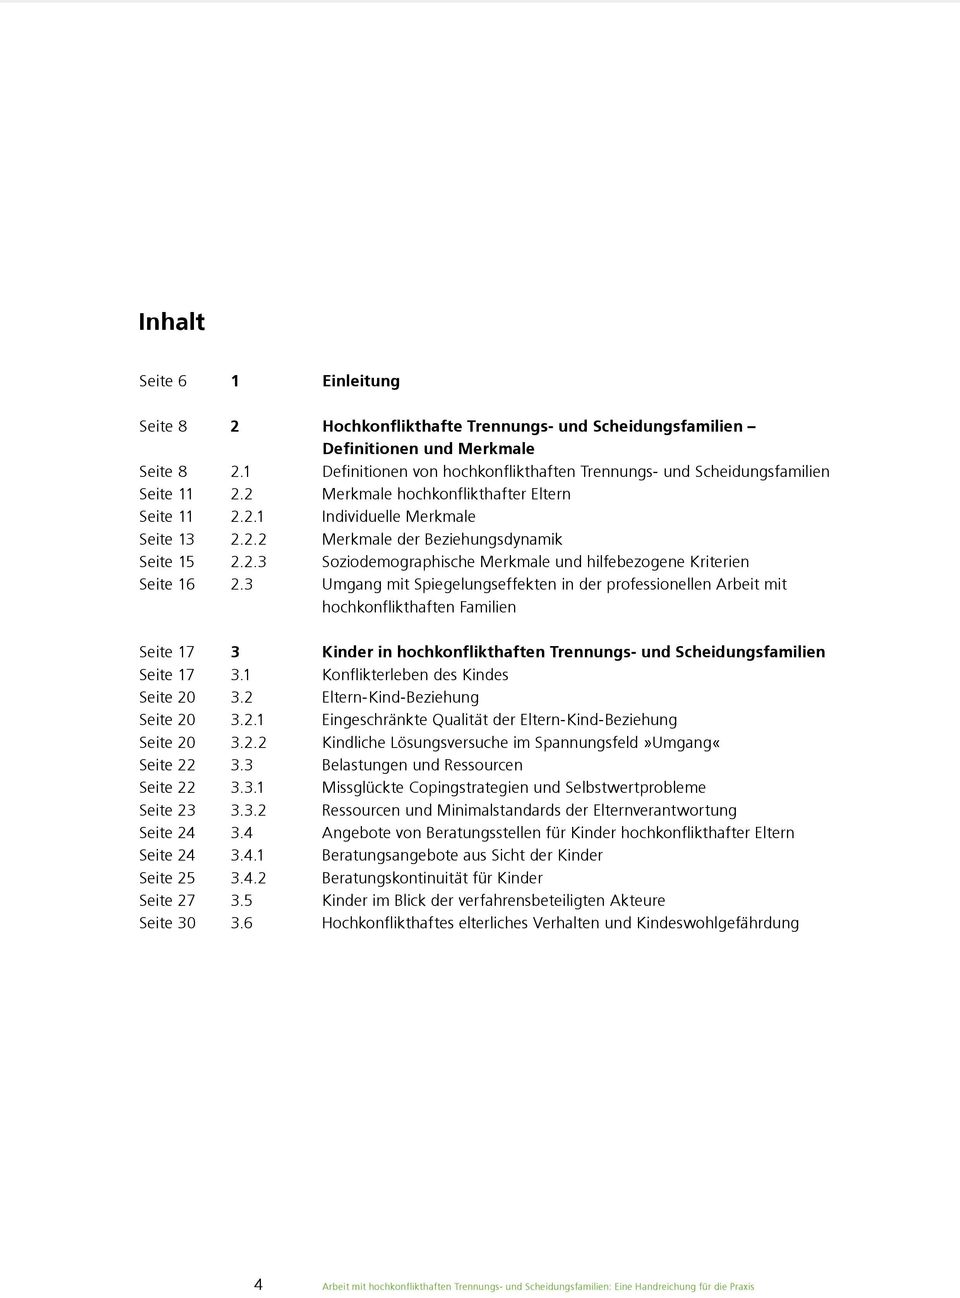 2.3 Soziodemographische Merkmale und hilfebezogene Kriterien Seite 16 2.